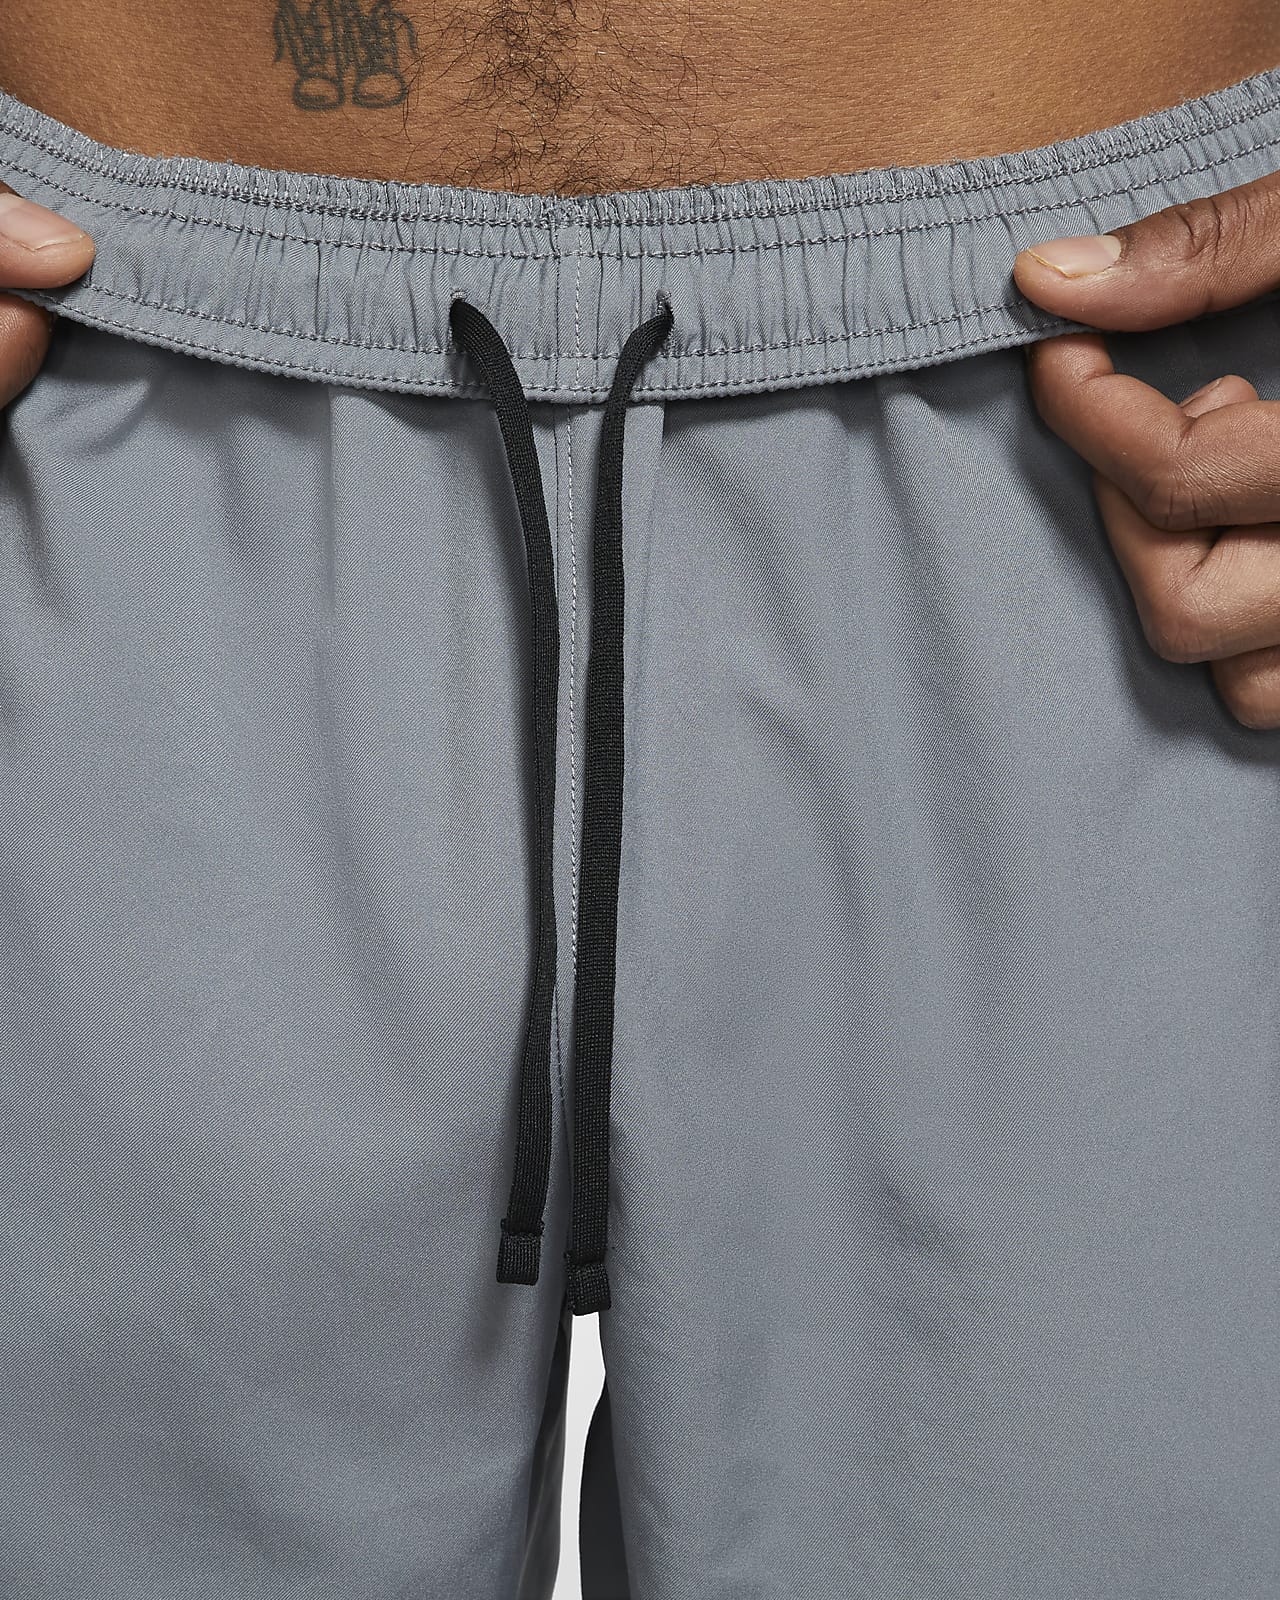 Nike Woven Running Pants - Running trousers Men's, Buy online